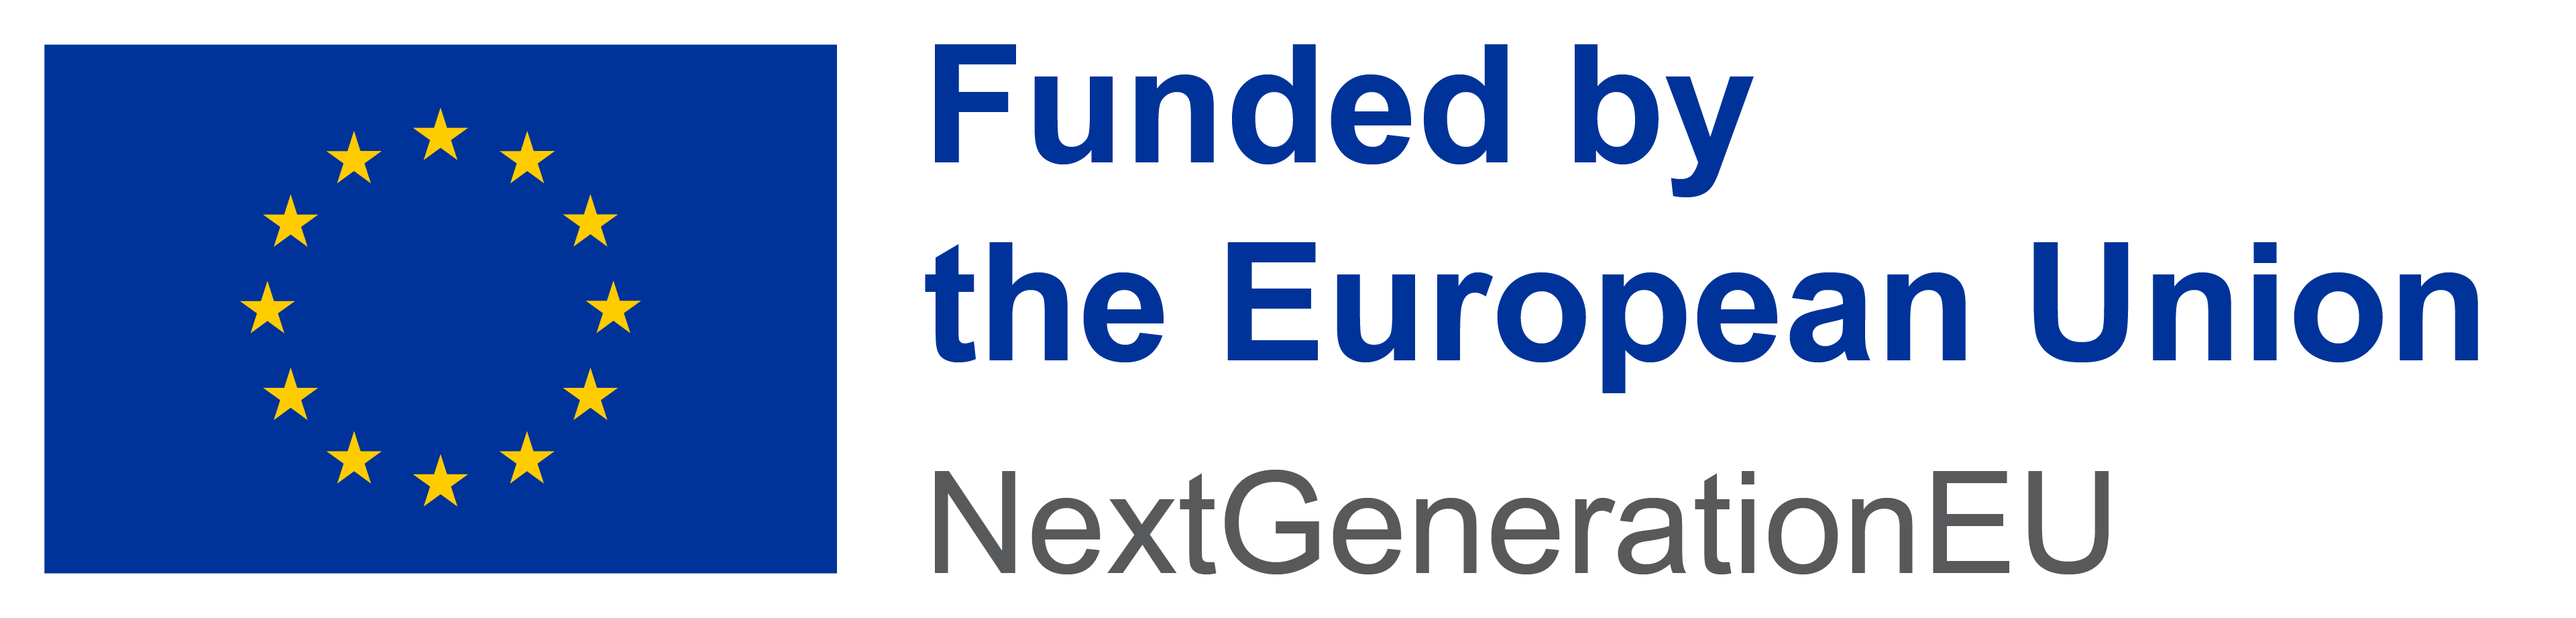 Logo of European Union - NextGenerationEU